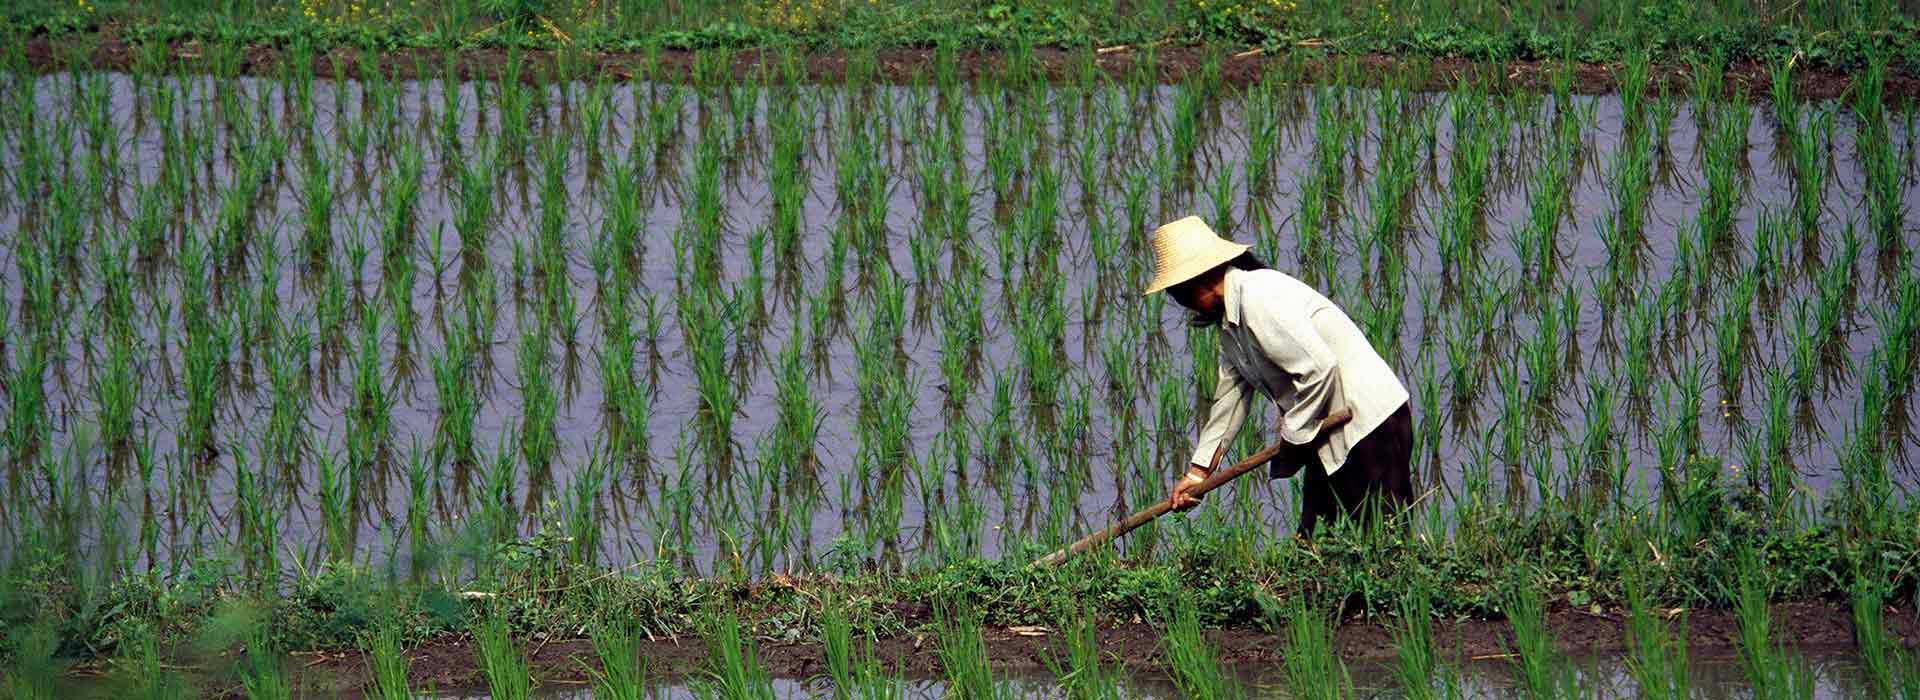 Female asian farmer working in a wet rice field